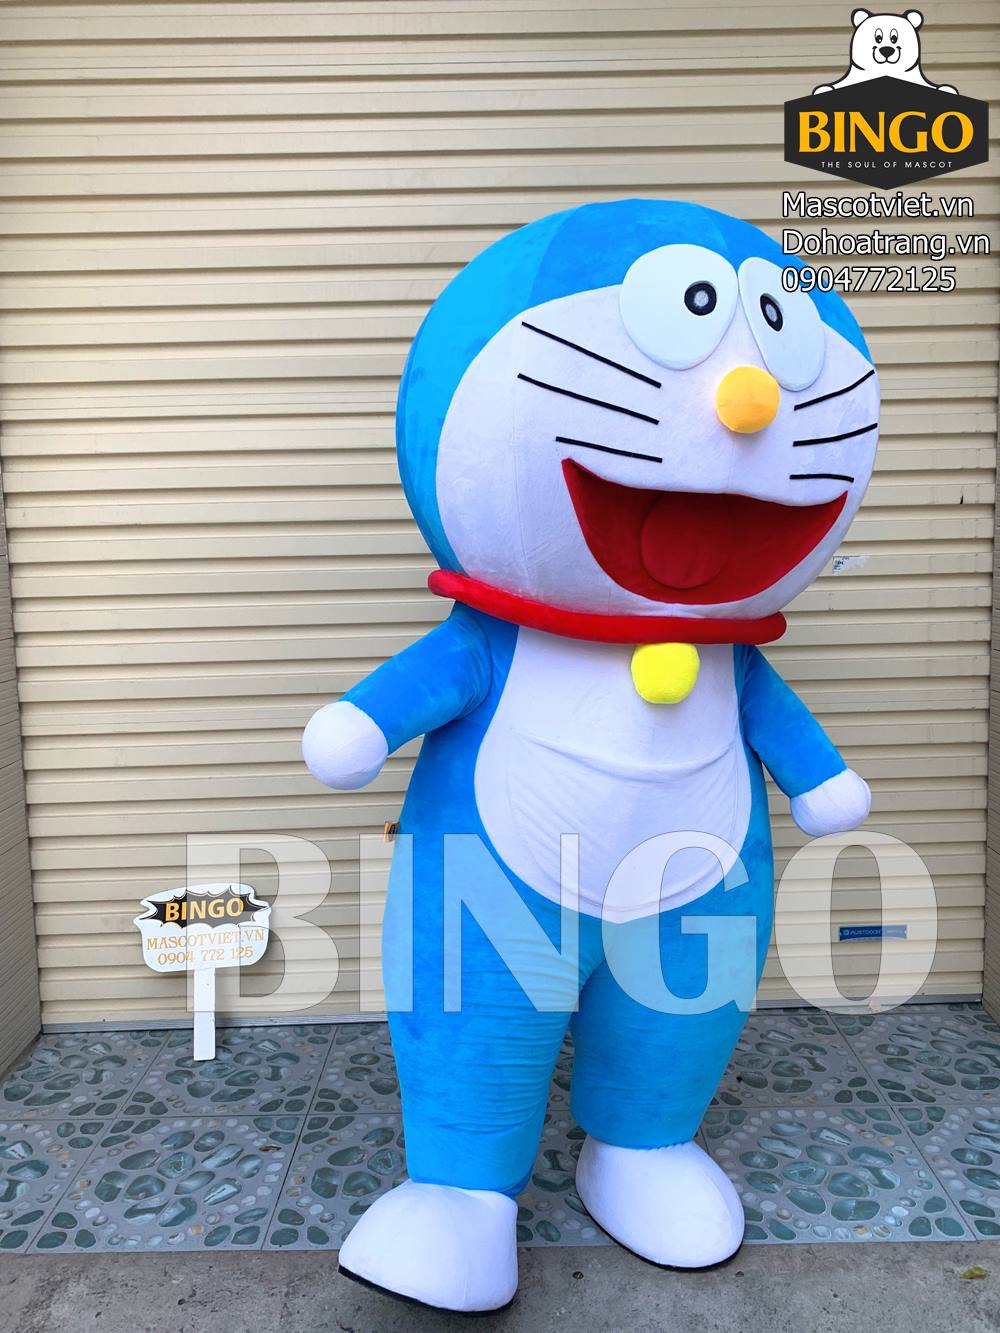 Doraemon là gì? Ý nghĩa tên nhân vật trong Doraemon - POPS Blog